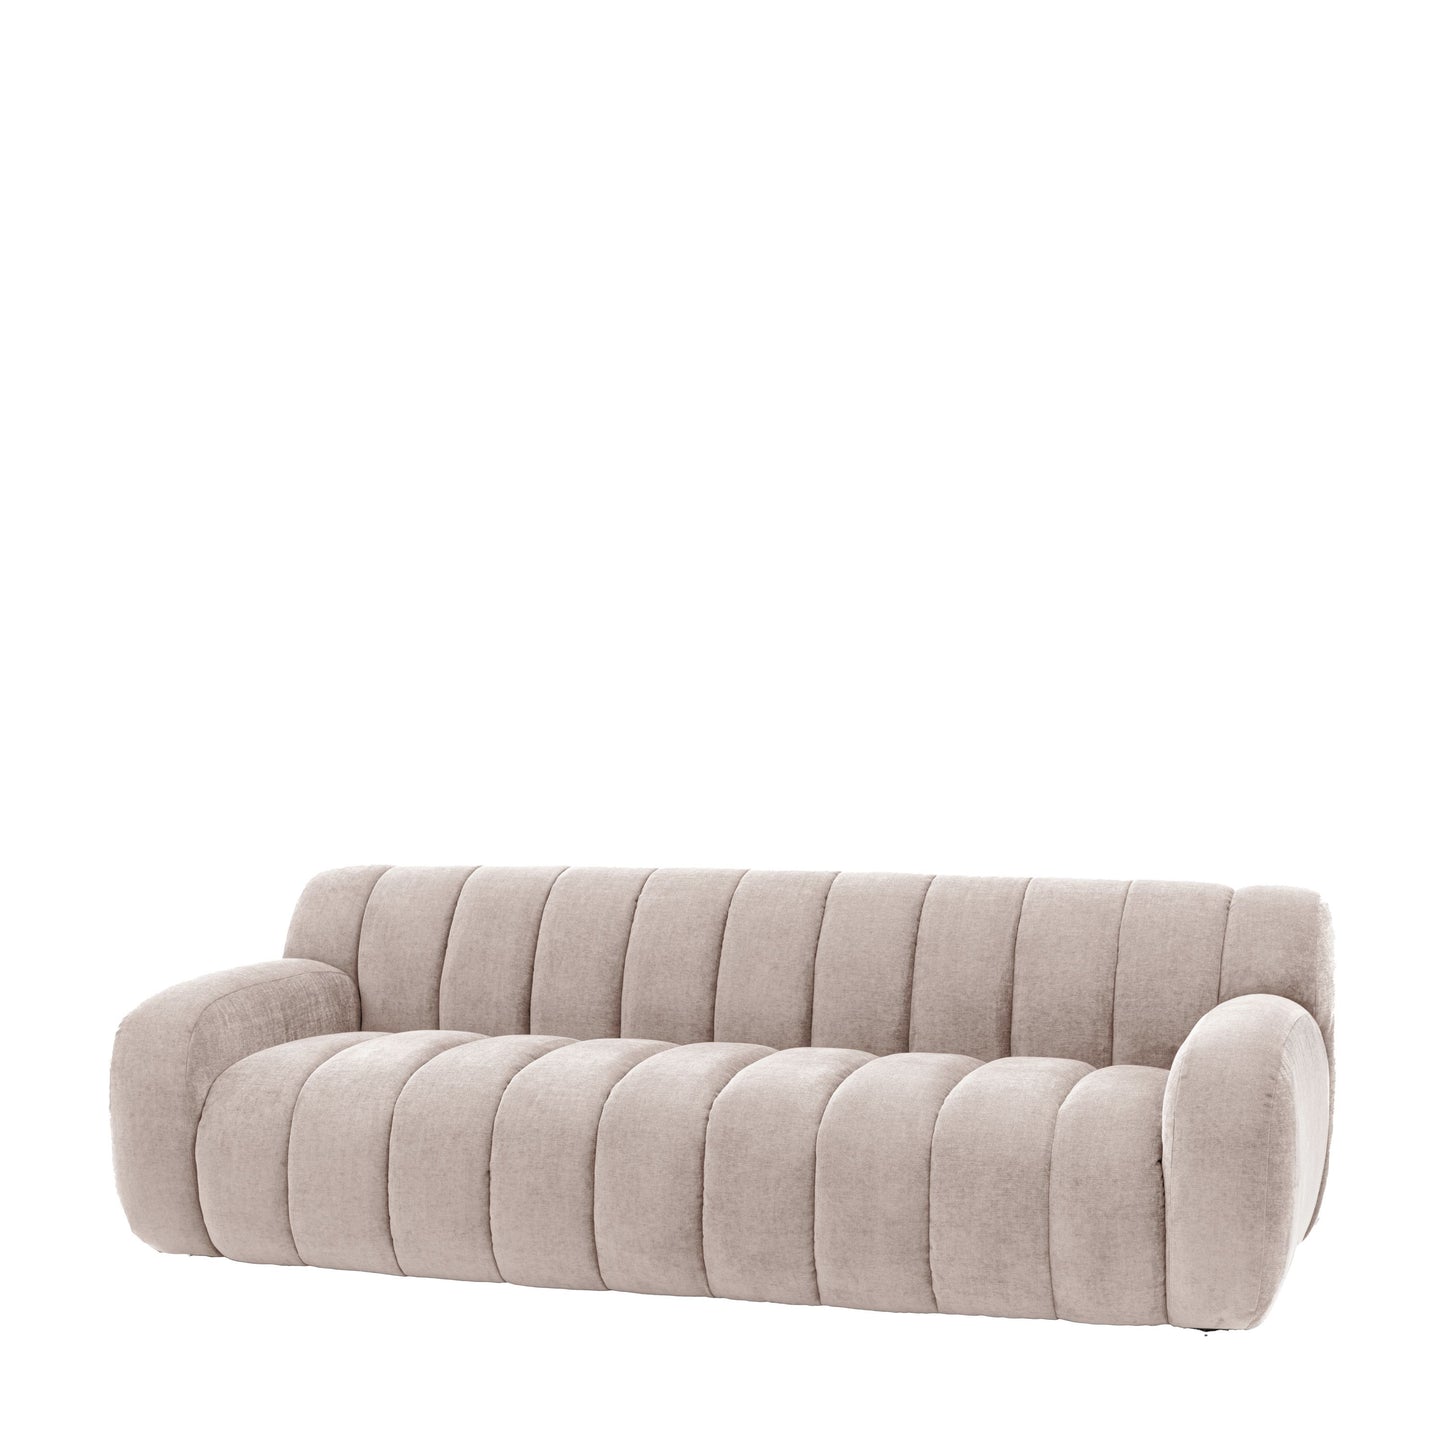 Sasha 3 Seater Sofa in Cream